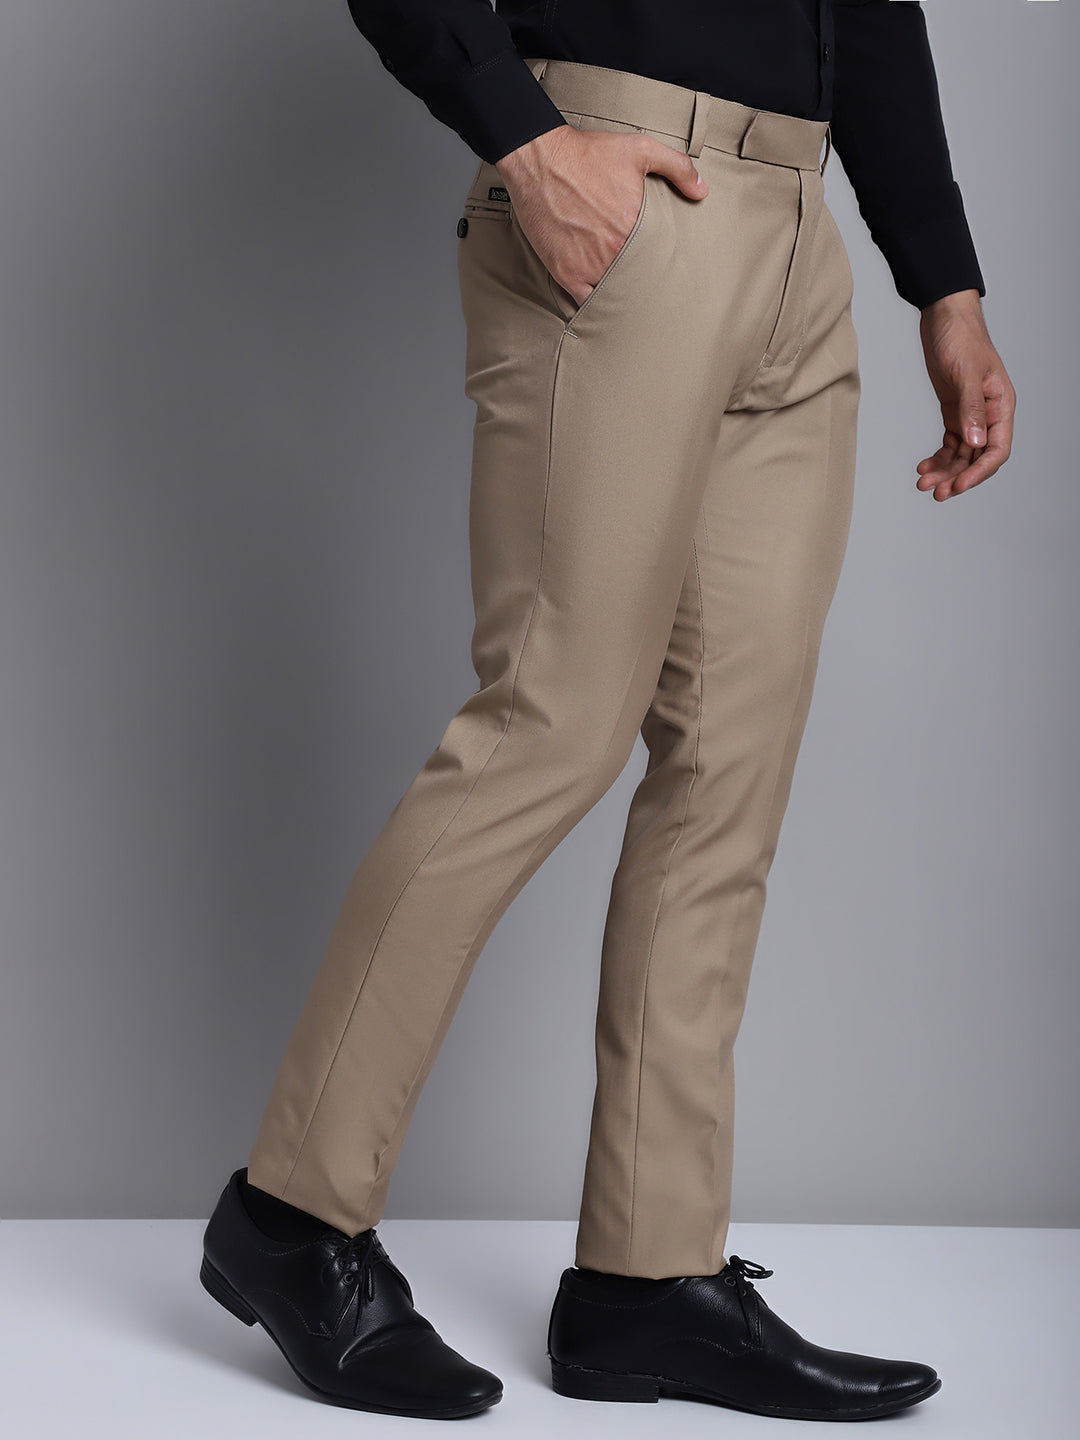 Men High Waist Pants Slim Dress Trousers Casual Naples Formal Dress Suit  Pants | eBay